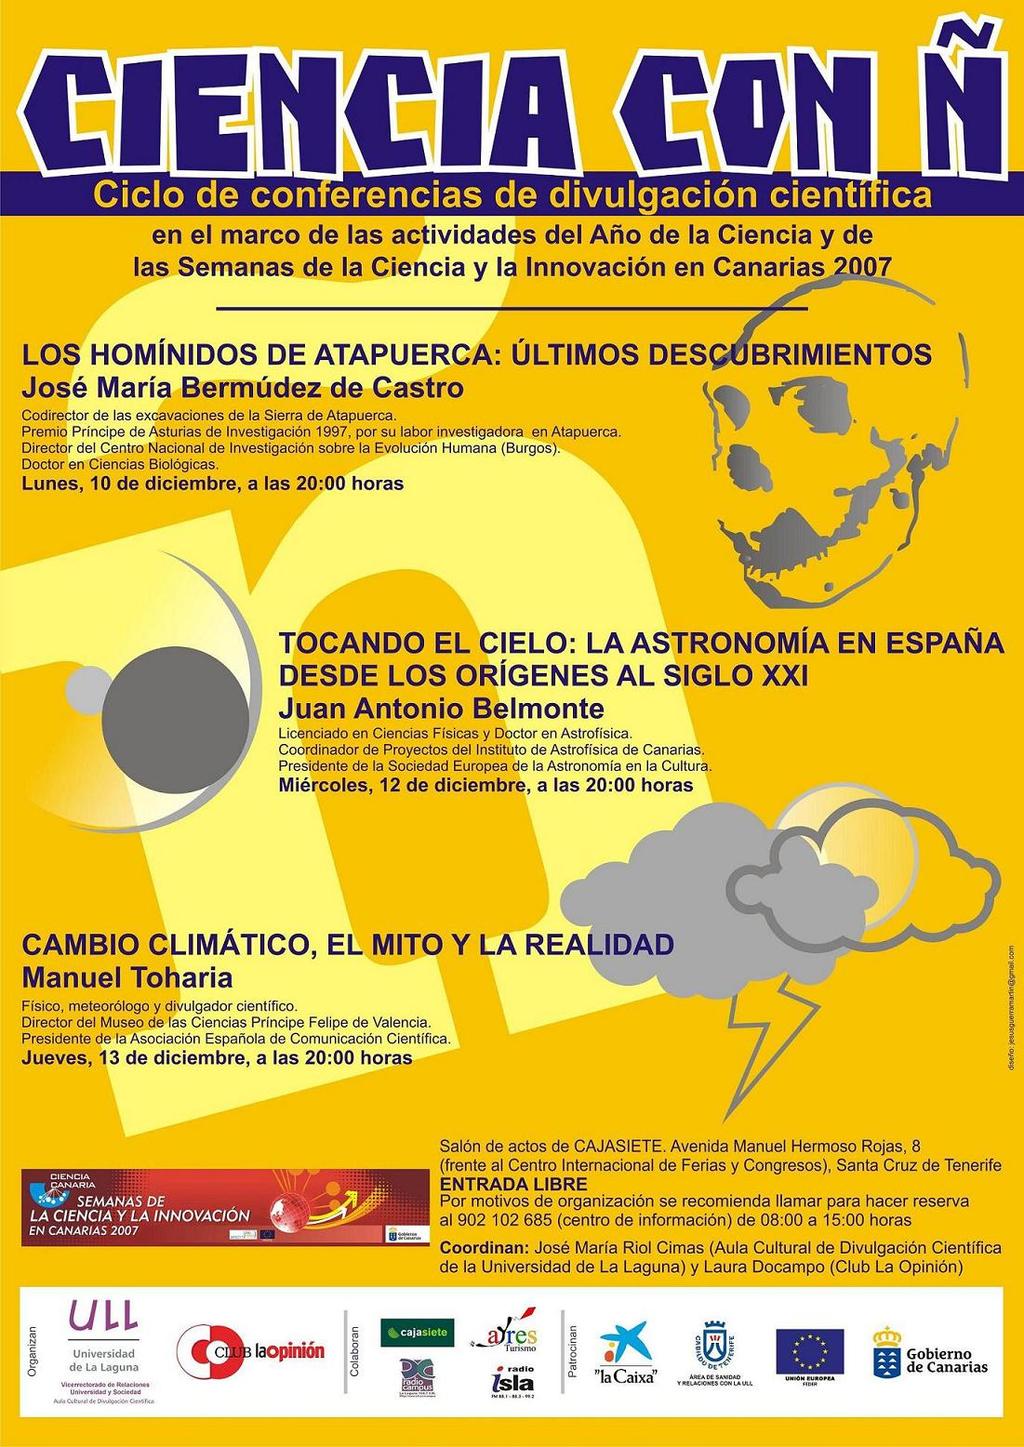 CIENCIA CON Ñ C-10 2007 Ciclo de 3 conferencias de divulgación científica (organizado por el Aula Cultural de Divulgación Científica de la Universidad de La Laguna y el Club La Opinión del periódico